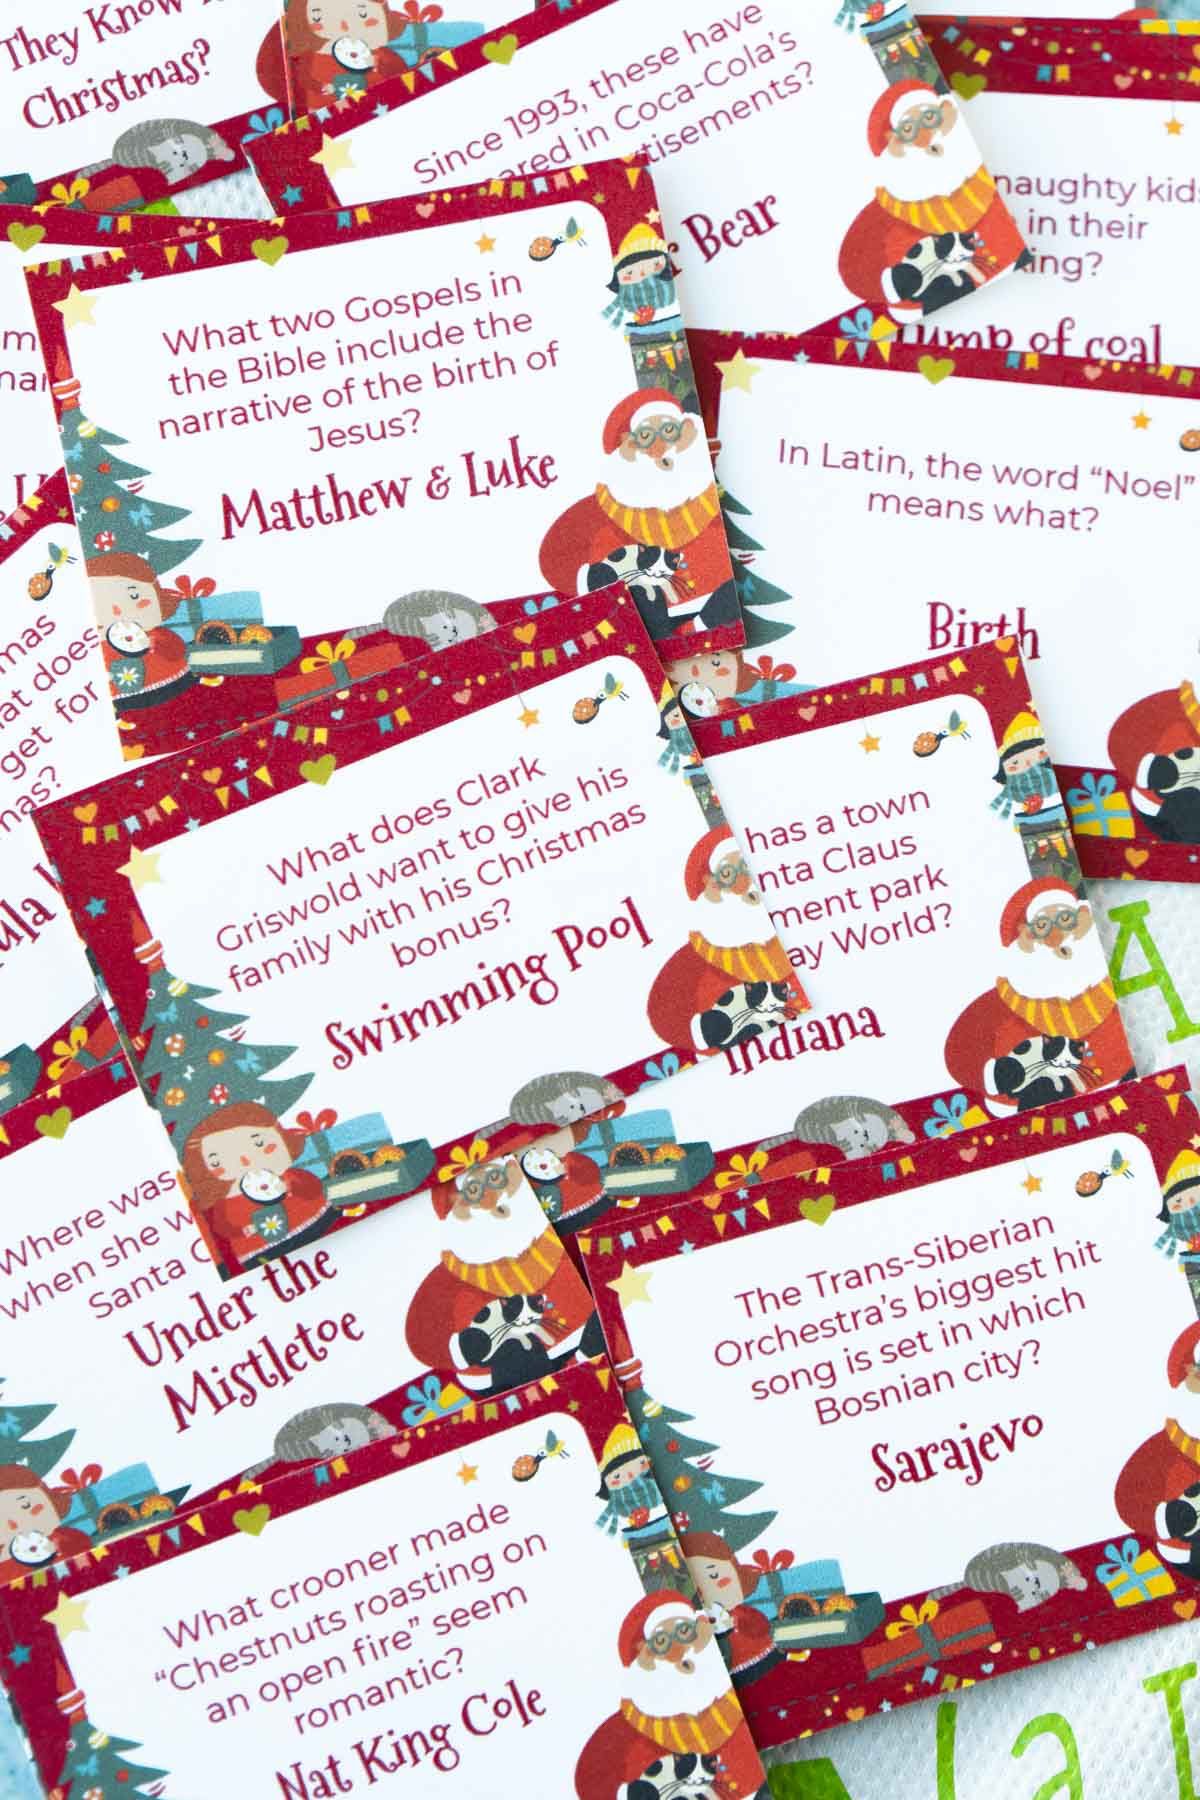 Χριστουγεννιάτικες ερωτήσεις σχετικά με κάρτες σε ένα σωρό